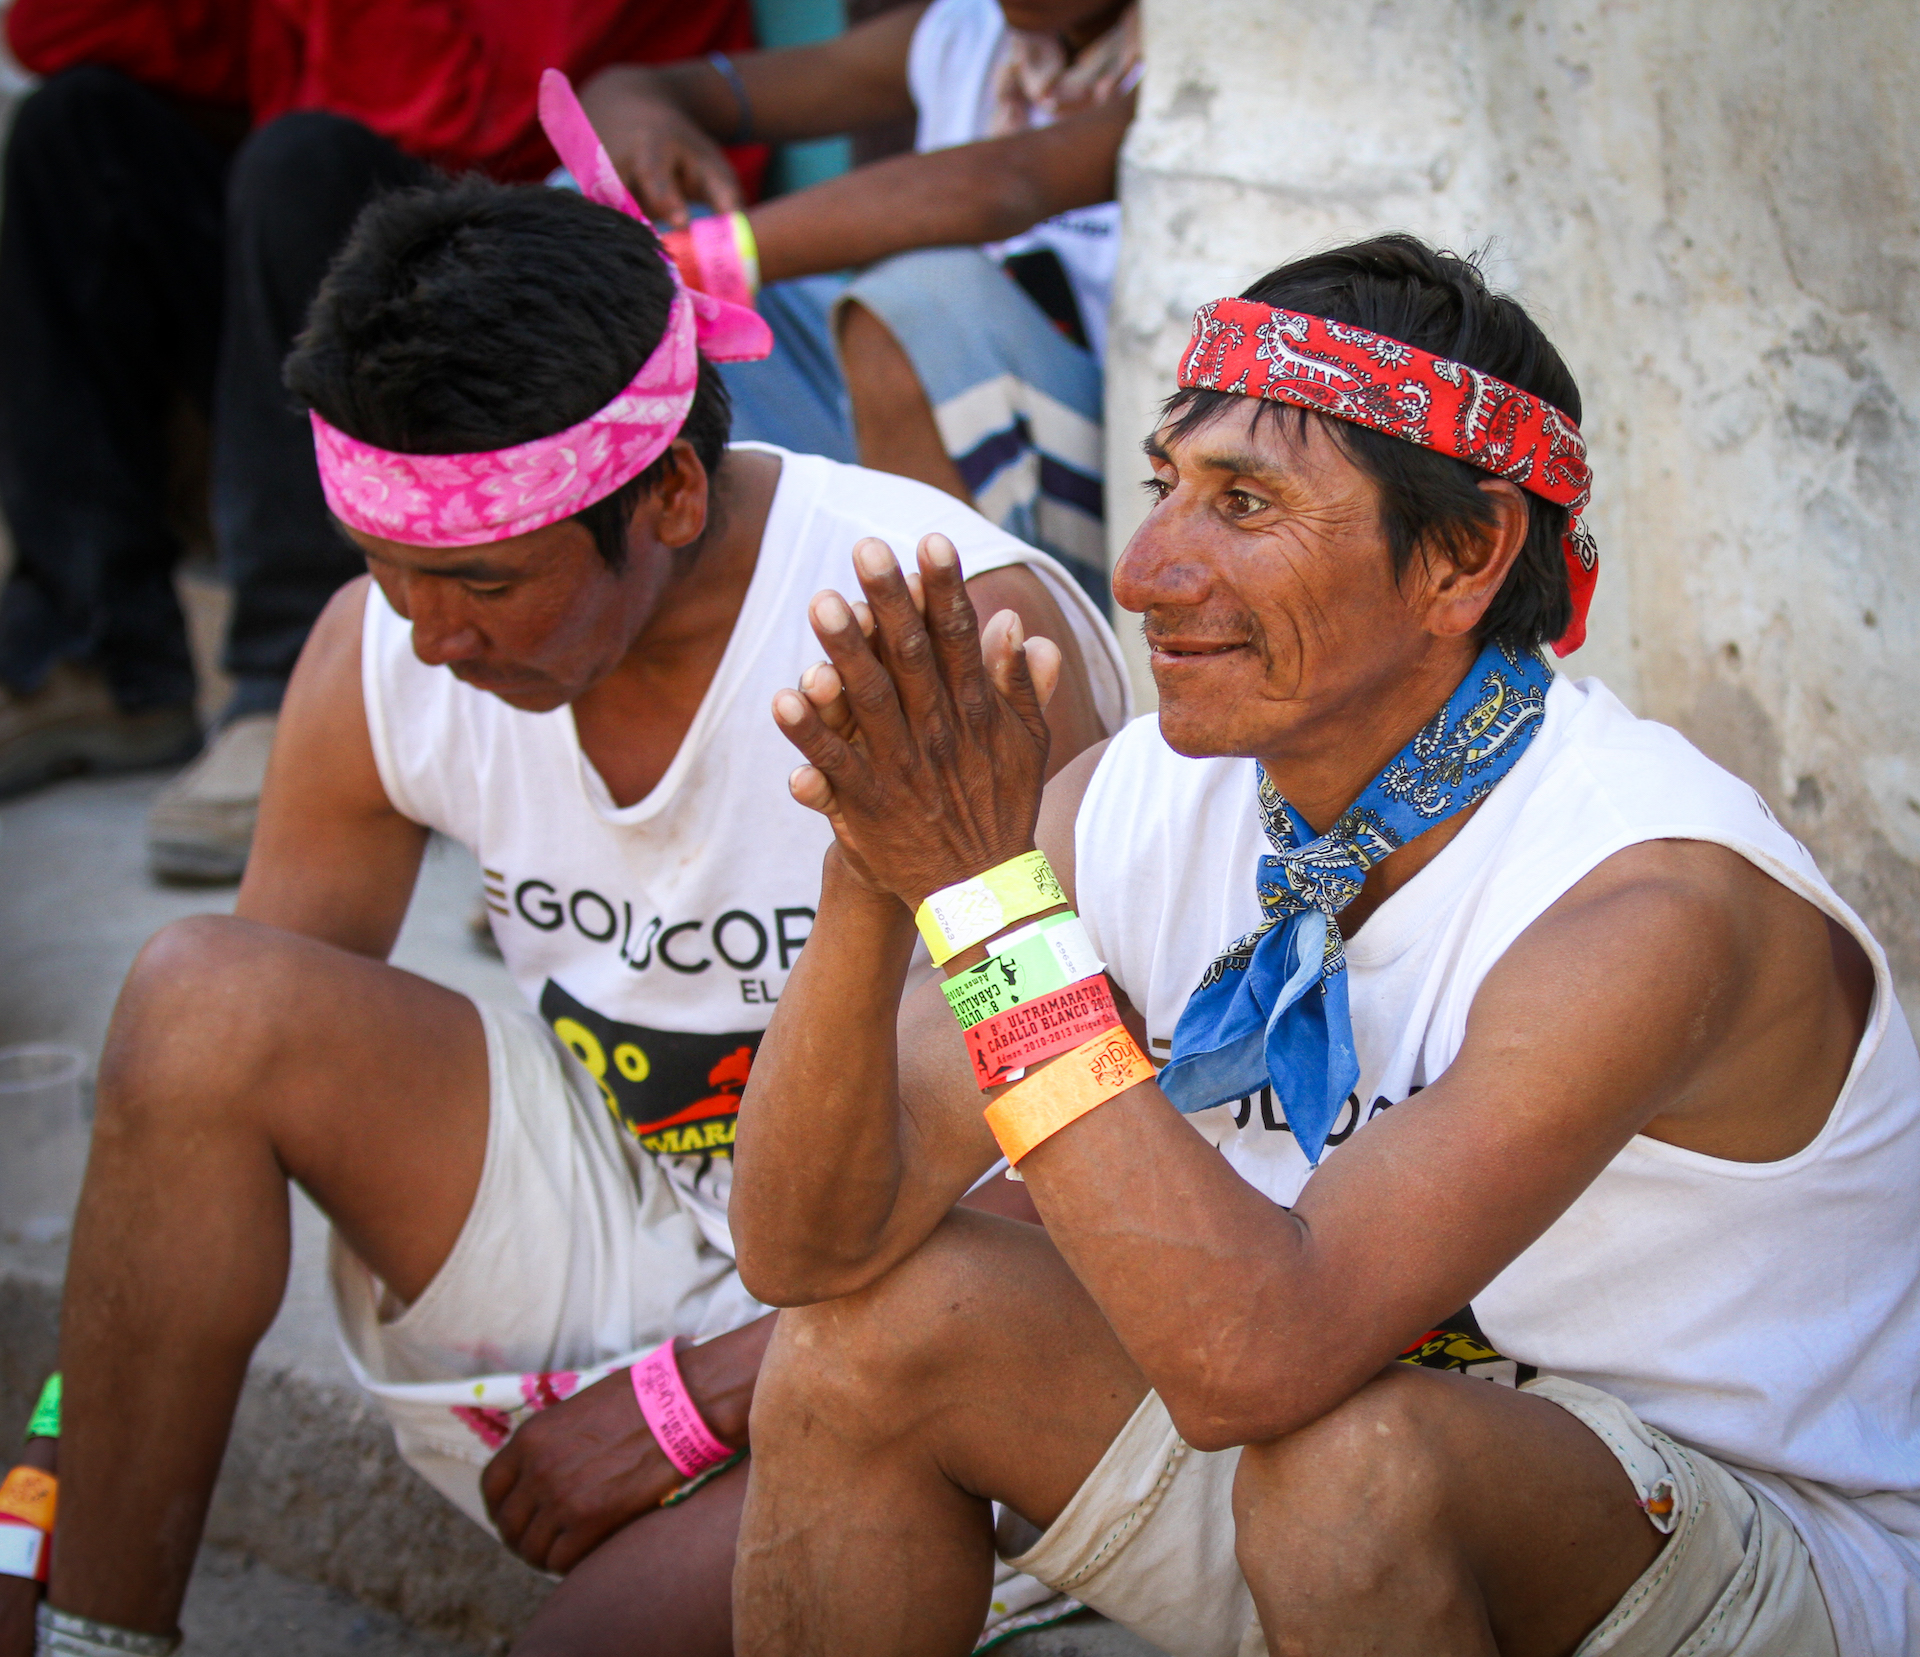 Běh s Tarahumary, Milan Daněk | Planeta lidí